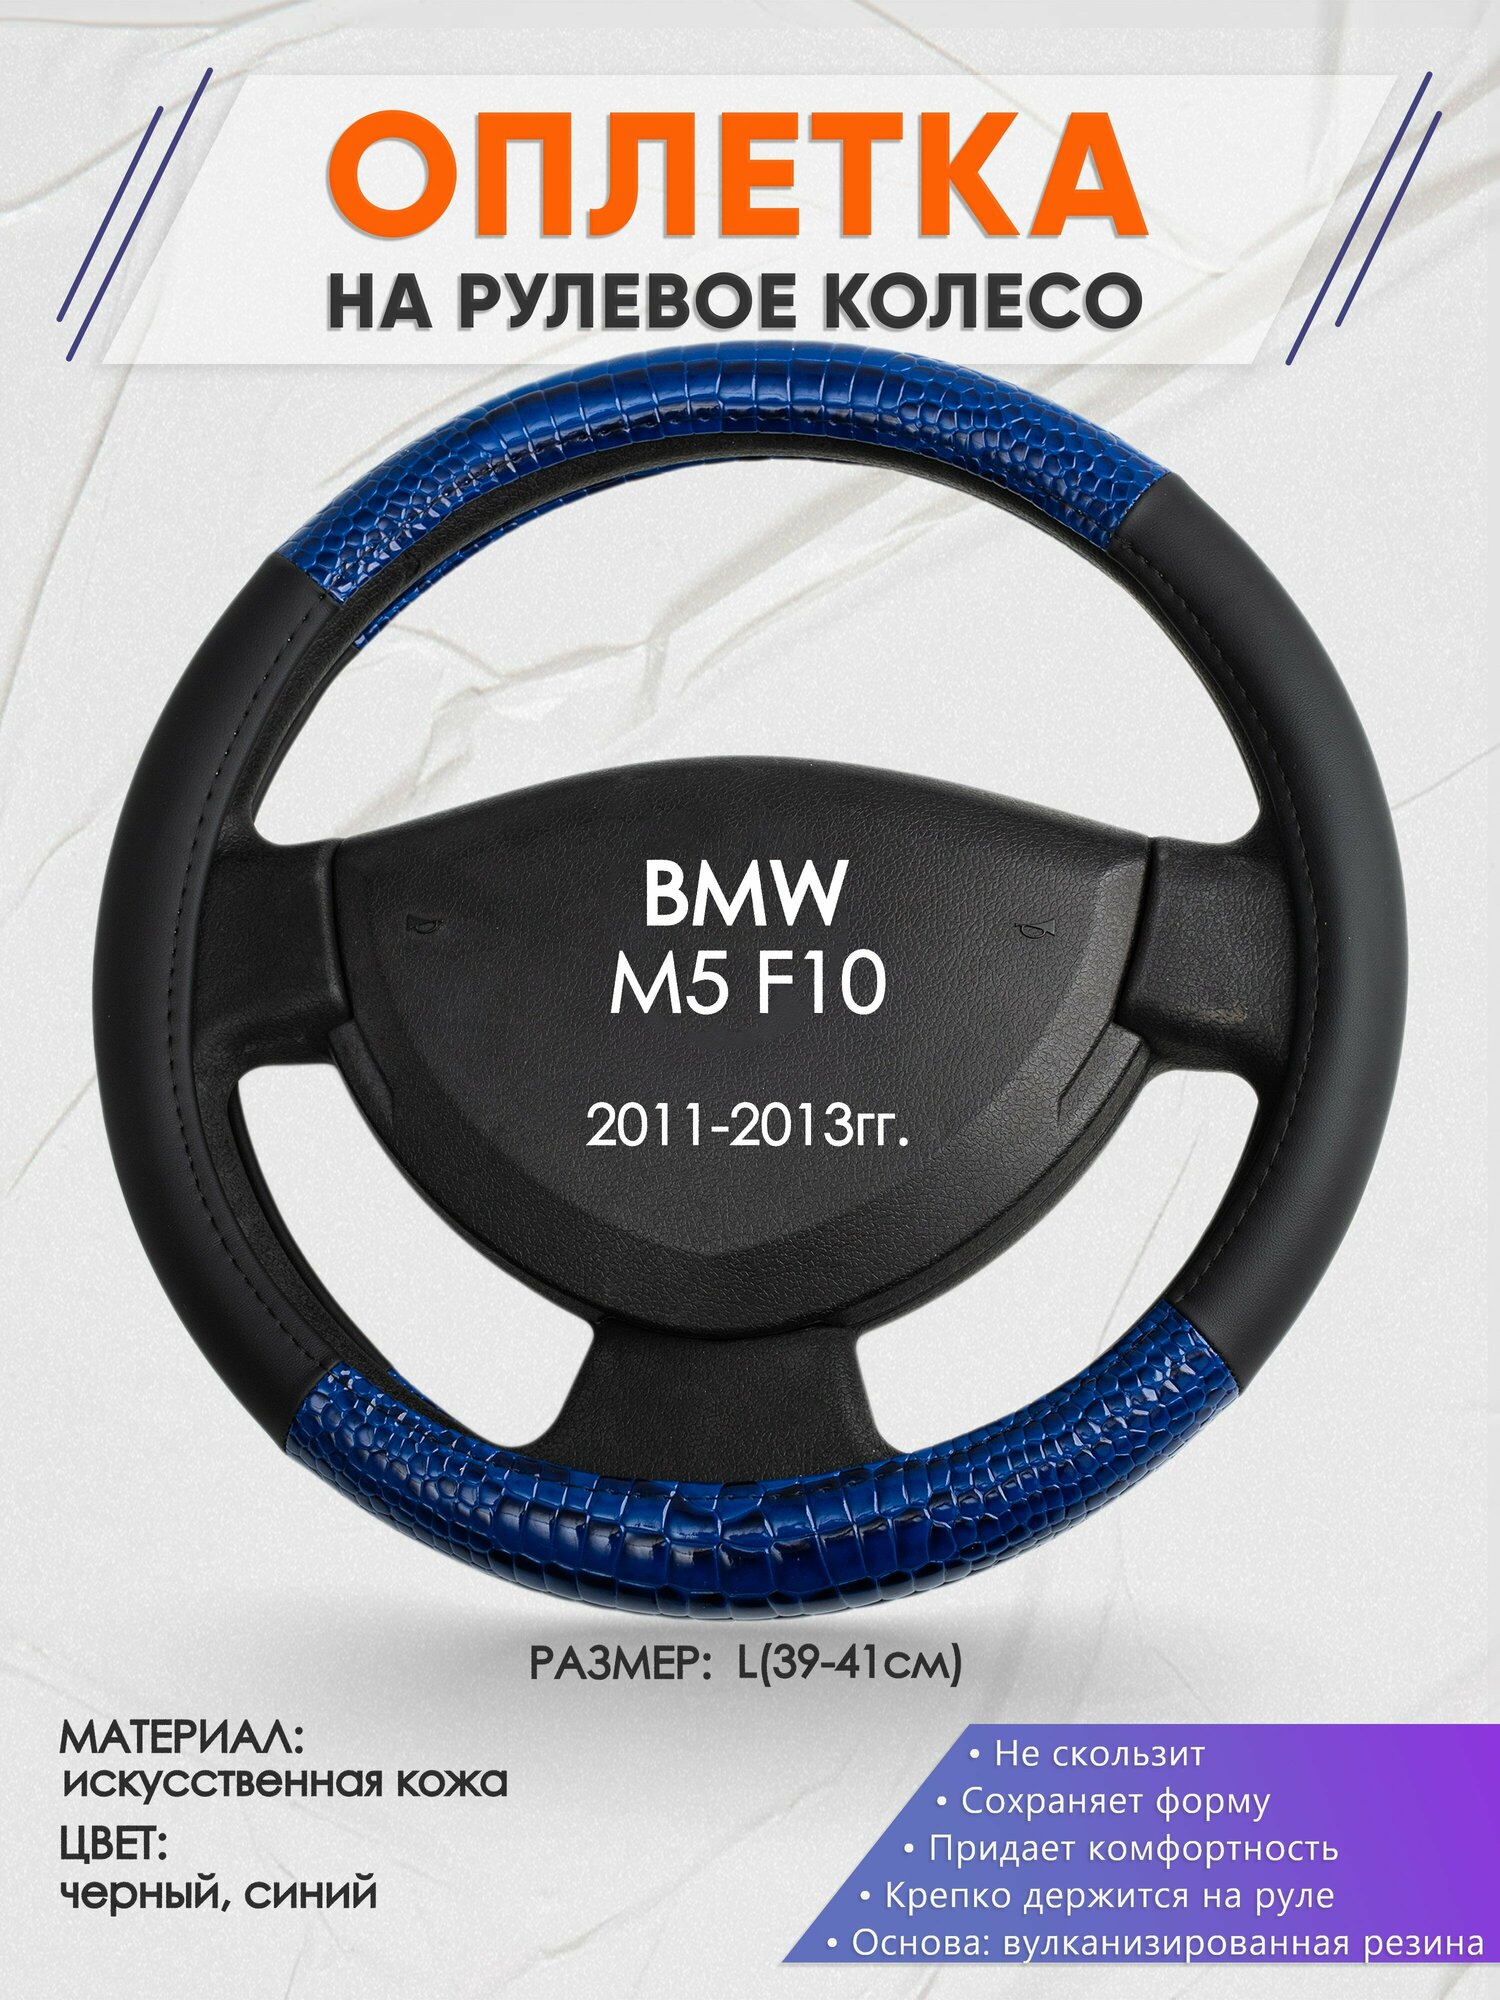 Оплетка на руль для BMW M5 F10(БМВ м5) 2011-2013, L(39-41см), Искусственная кожа 82